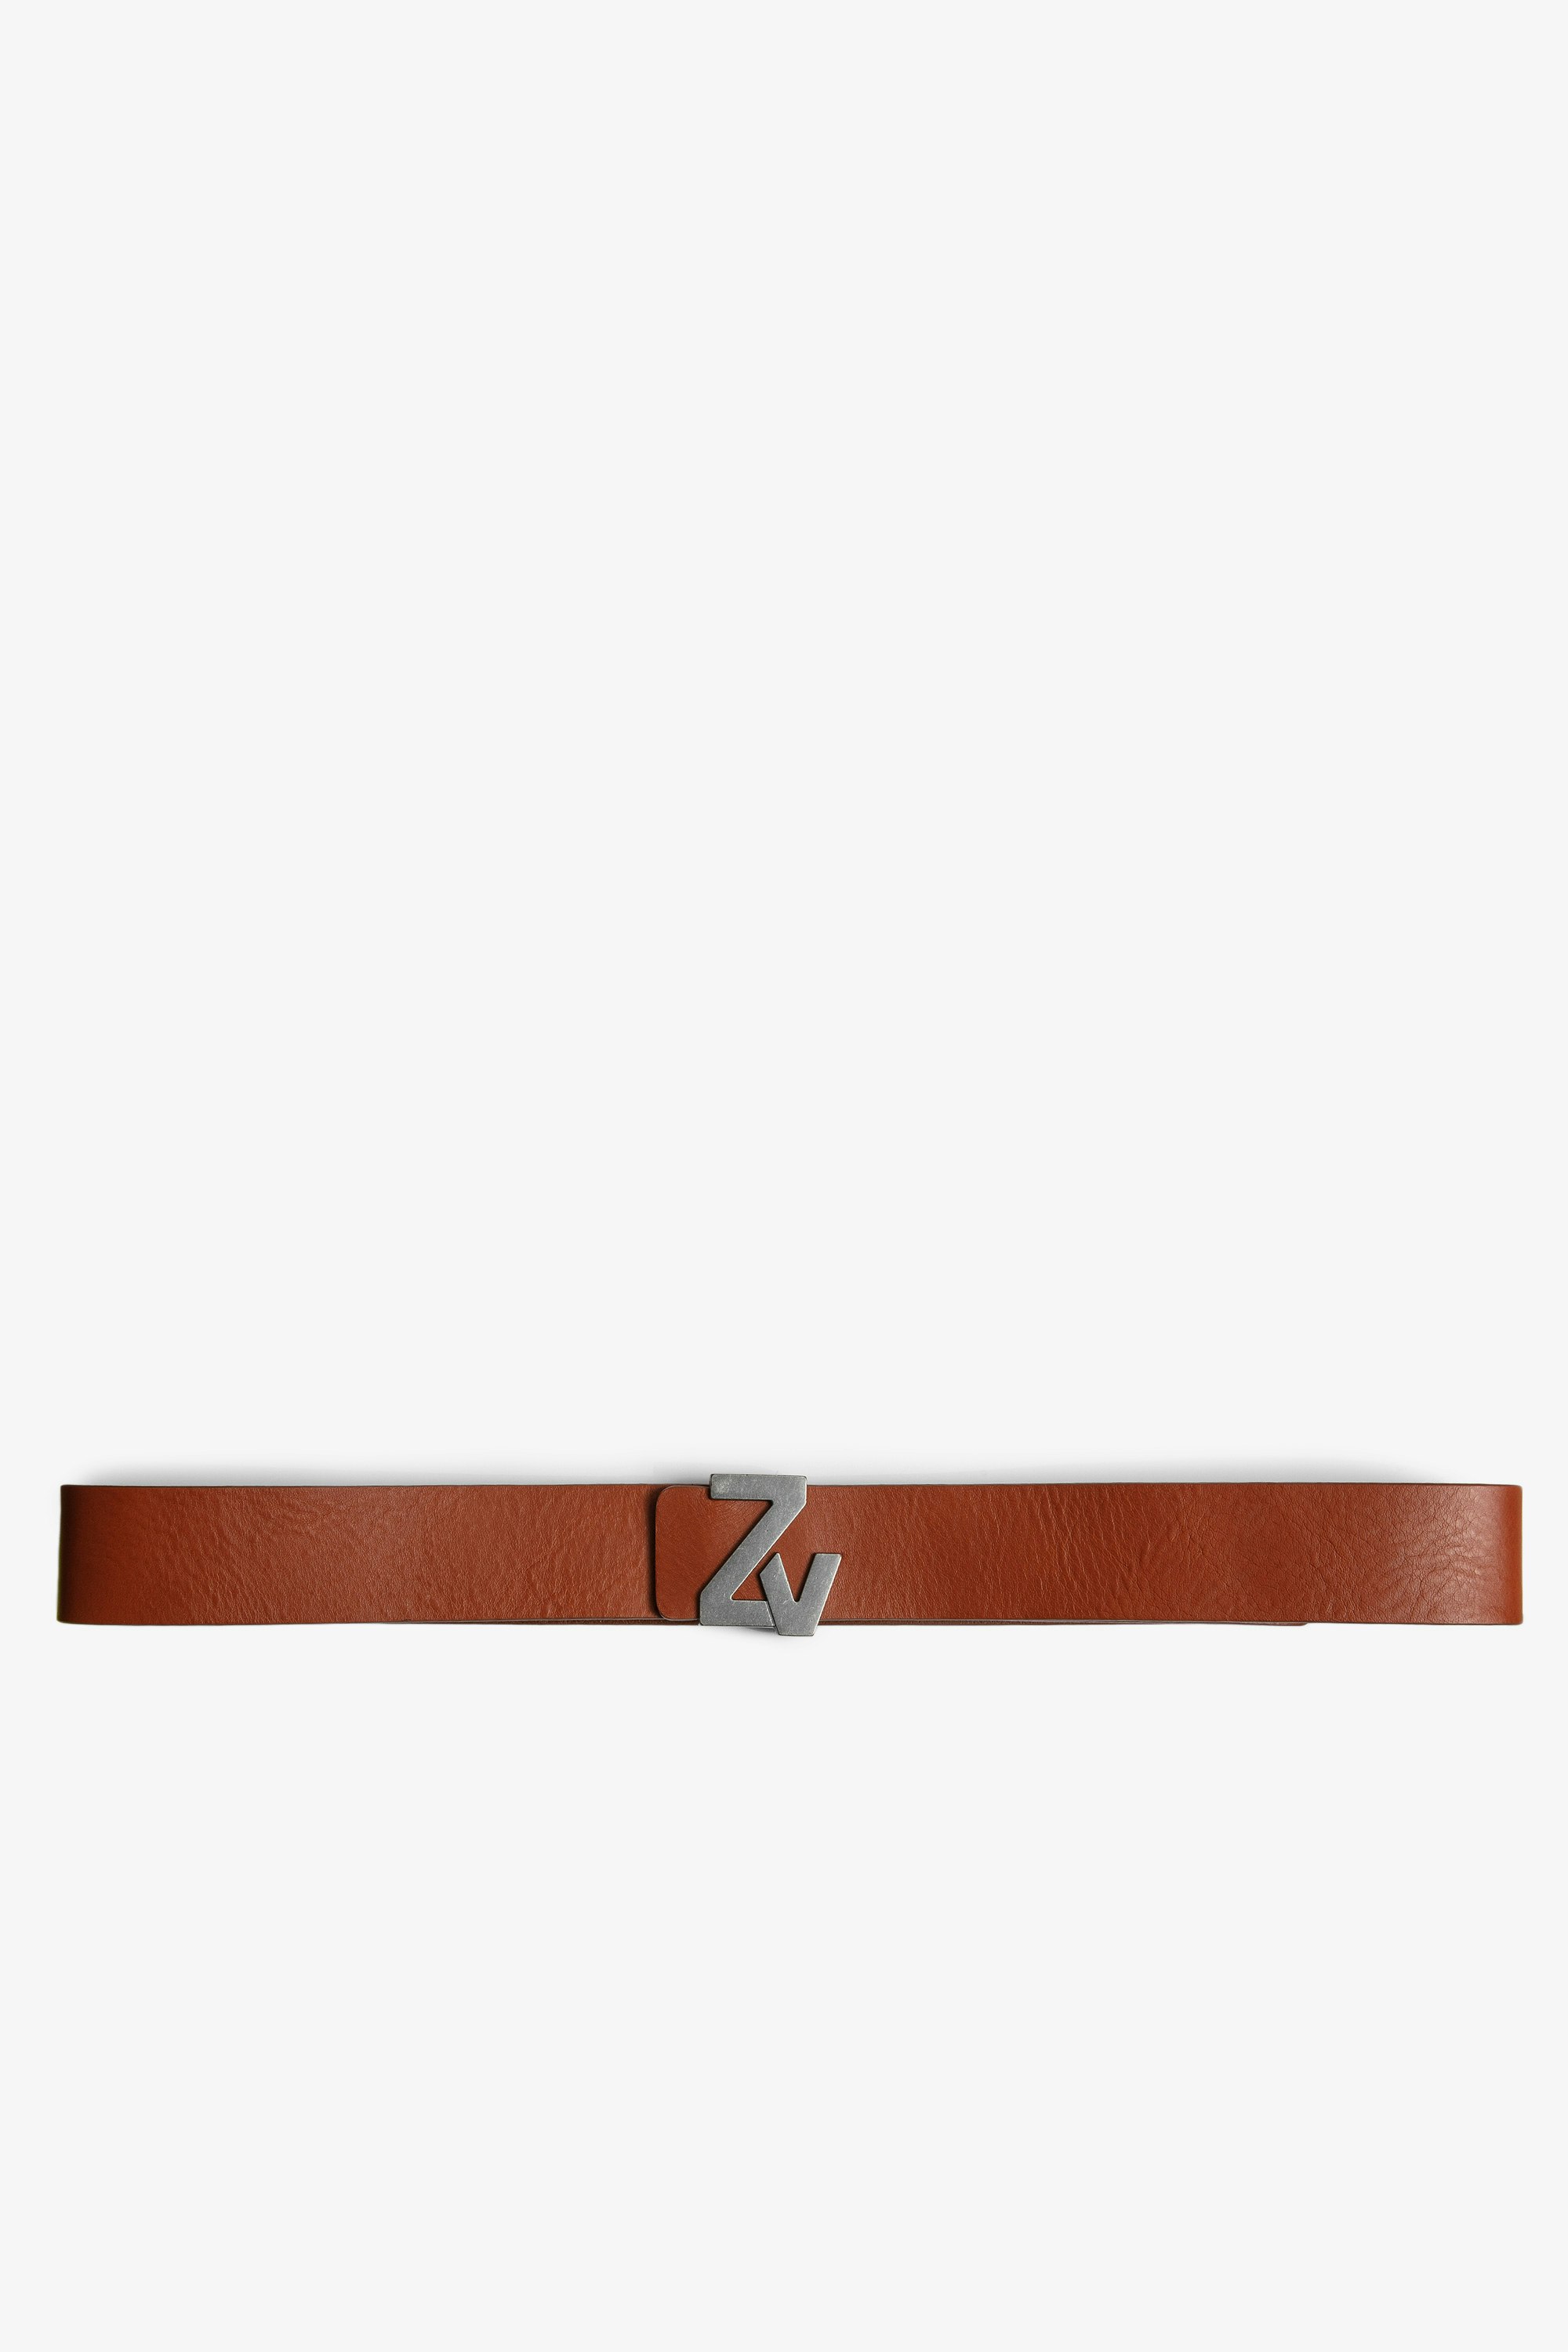 ZV Initiale La Belt - Men's cognac leather belt with ZV buckle